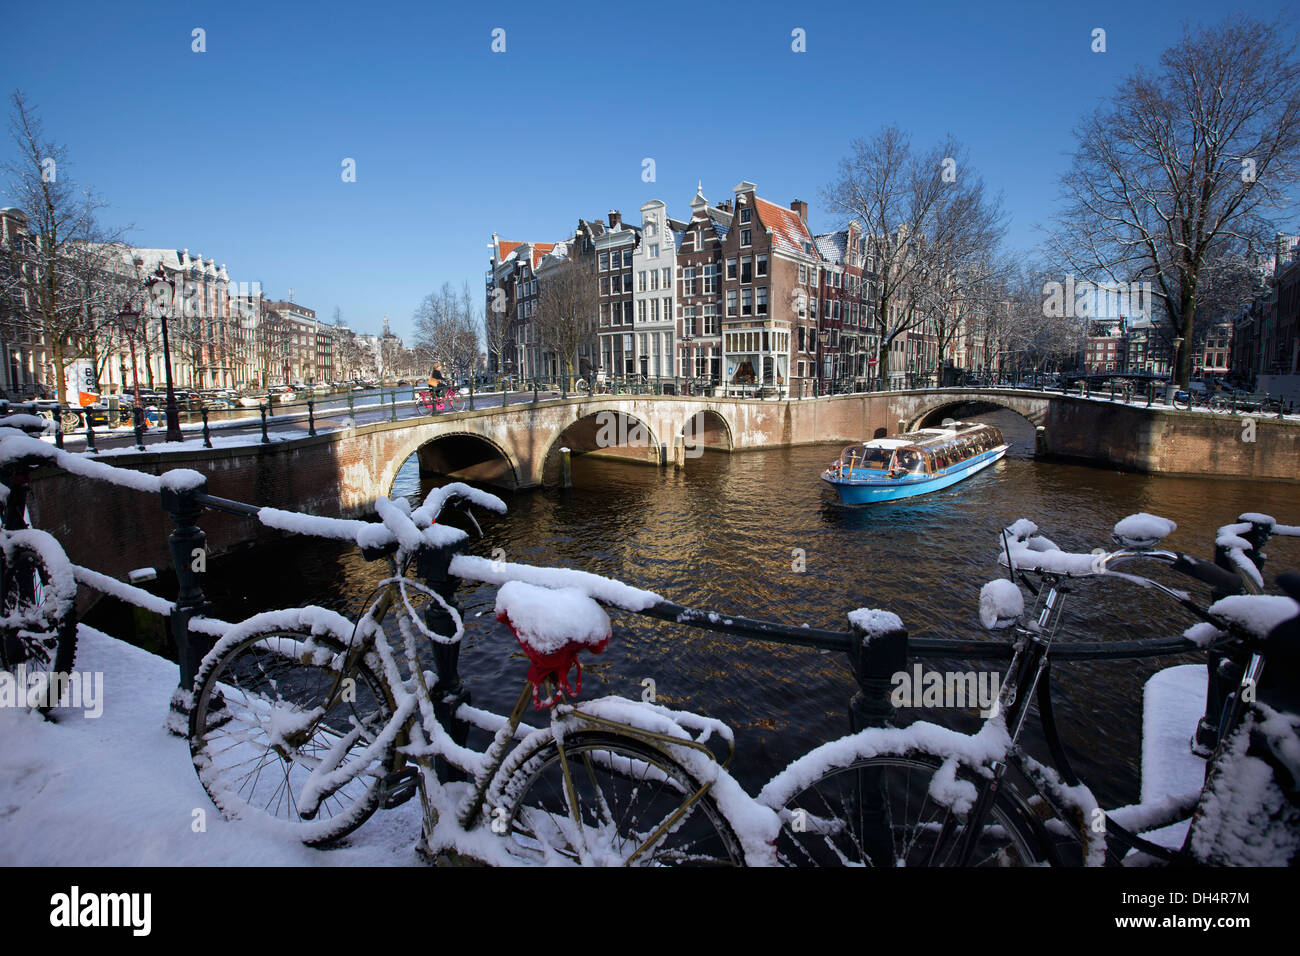 La Hollande, Amsterdam, maisons du canal Keizersgracht, dans canal Leidsegracht. Unesco World Heritage site. Les vélos. La neige. Canal ou excursion en bateau. Banque D'Images